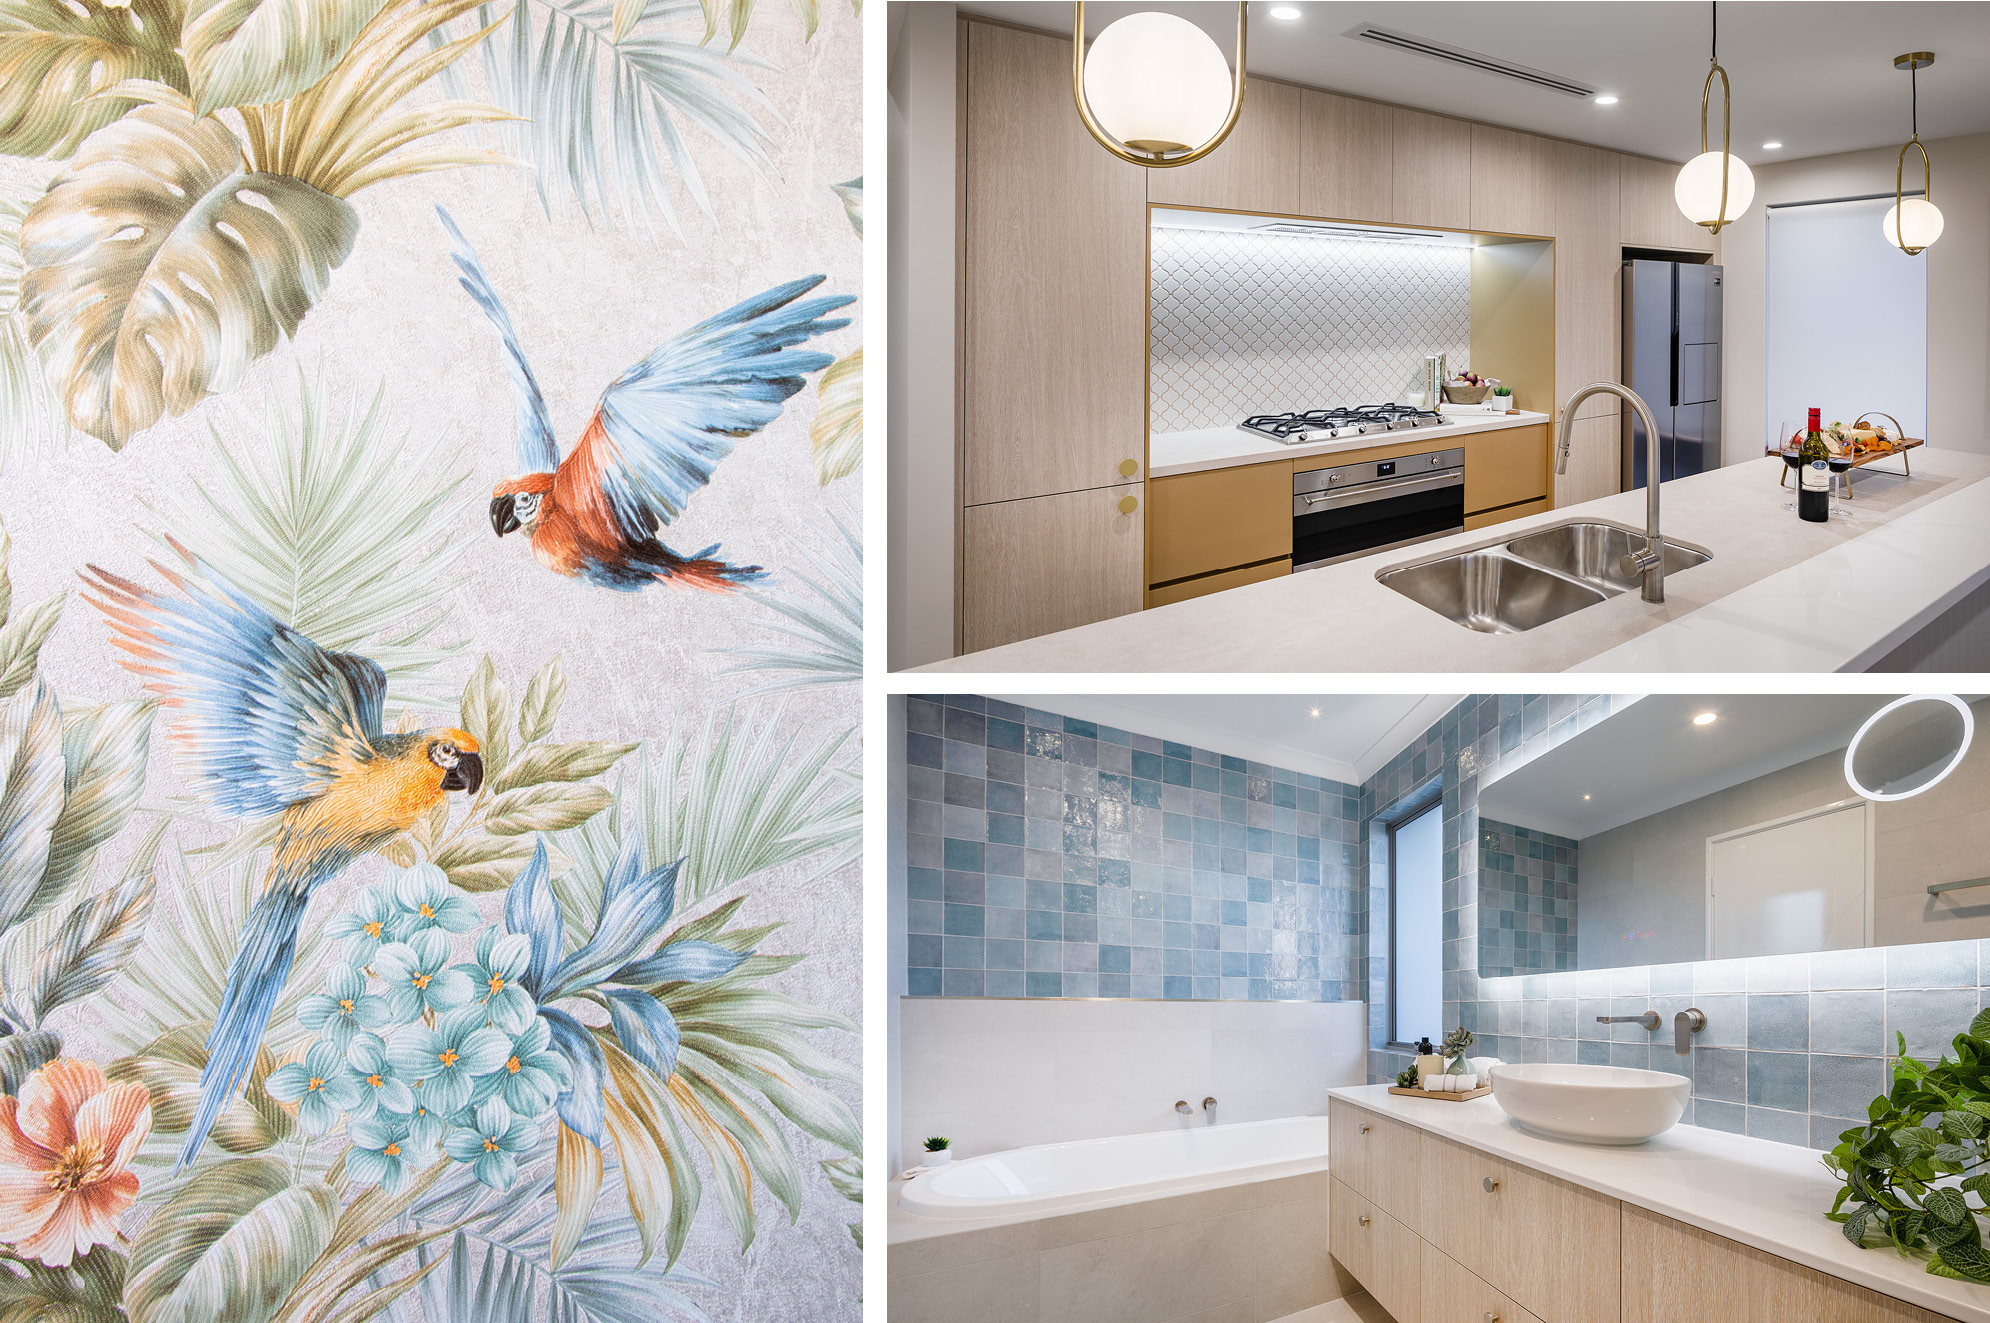 The Miami Style Home Design Comes to Perth